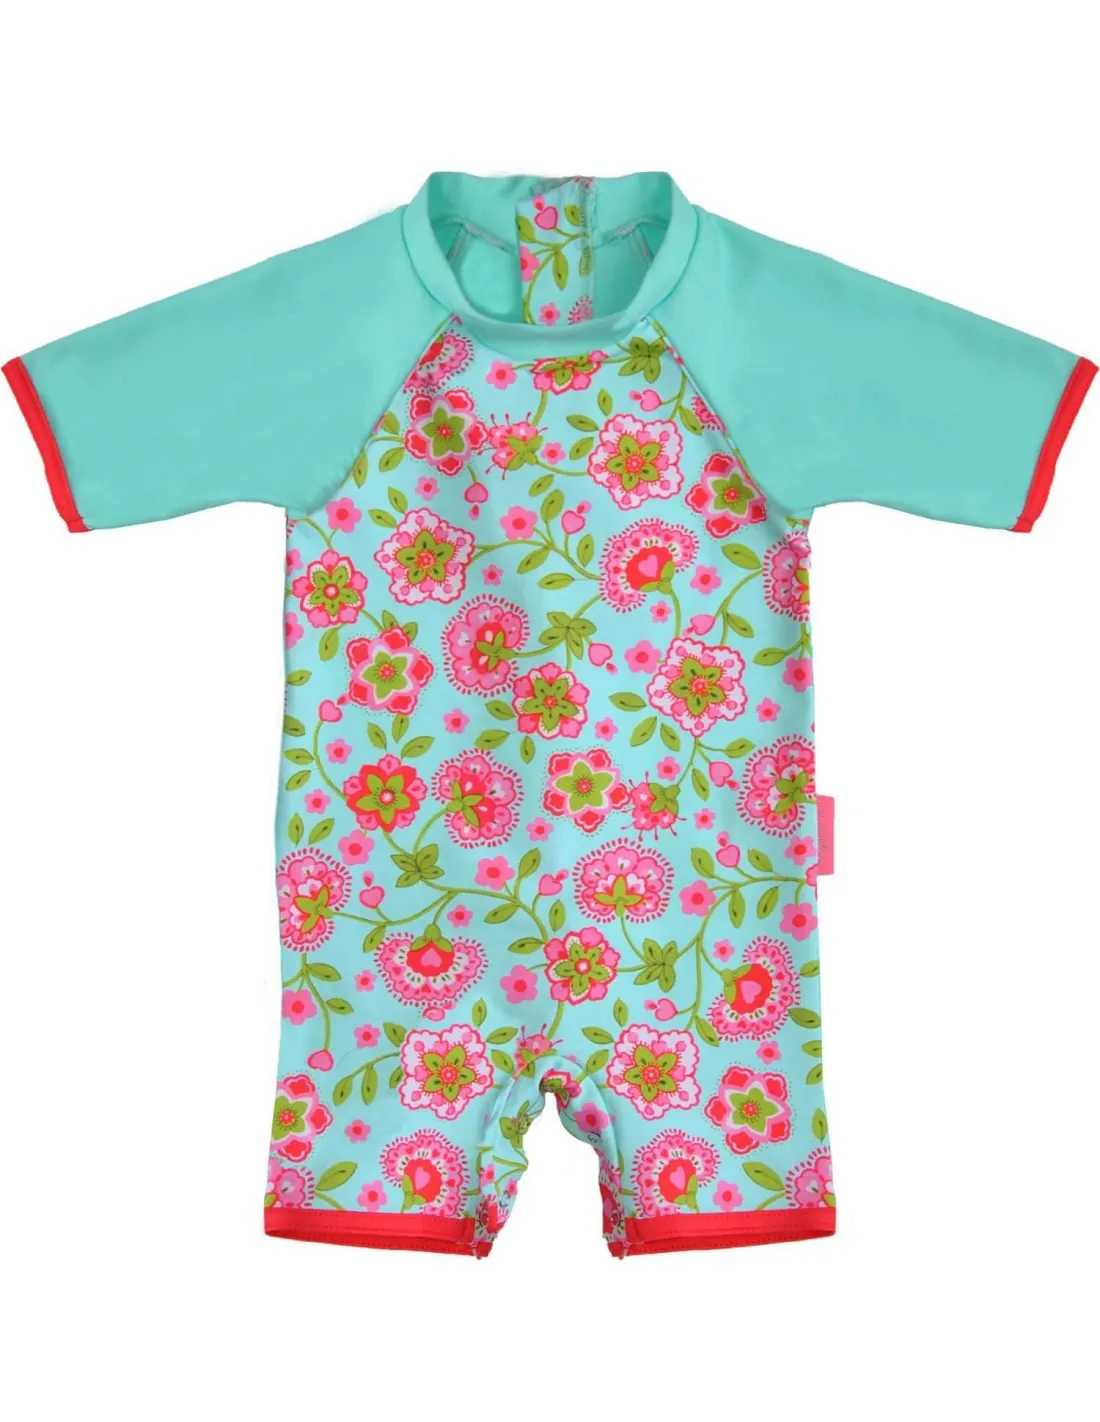 Combinaison anti UV bébé fille fleurie turquoise - Les Petits Protégés